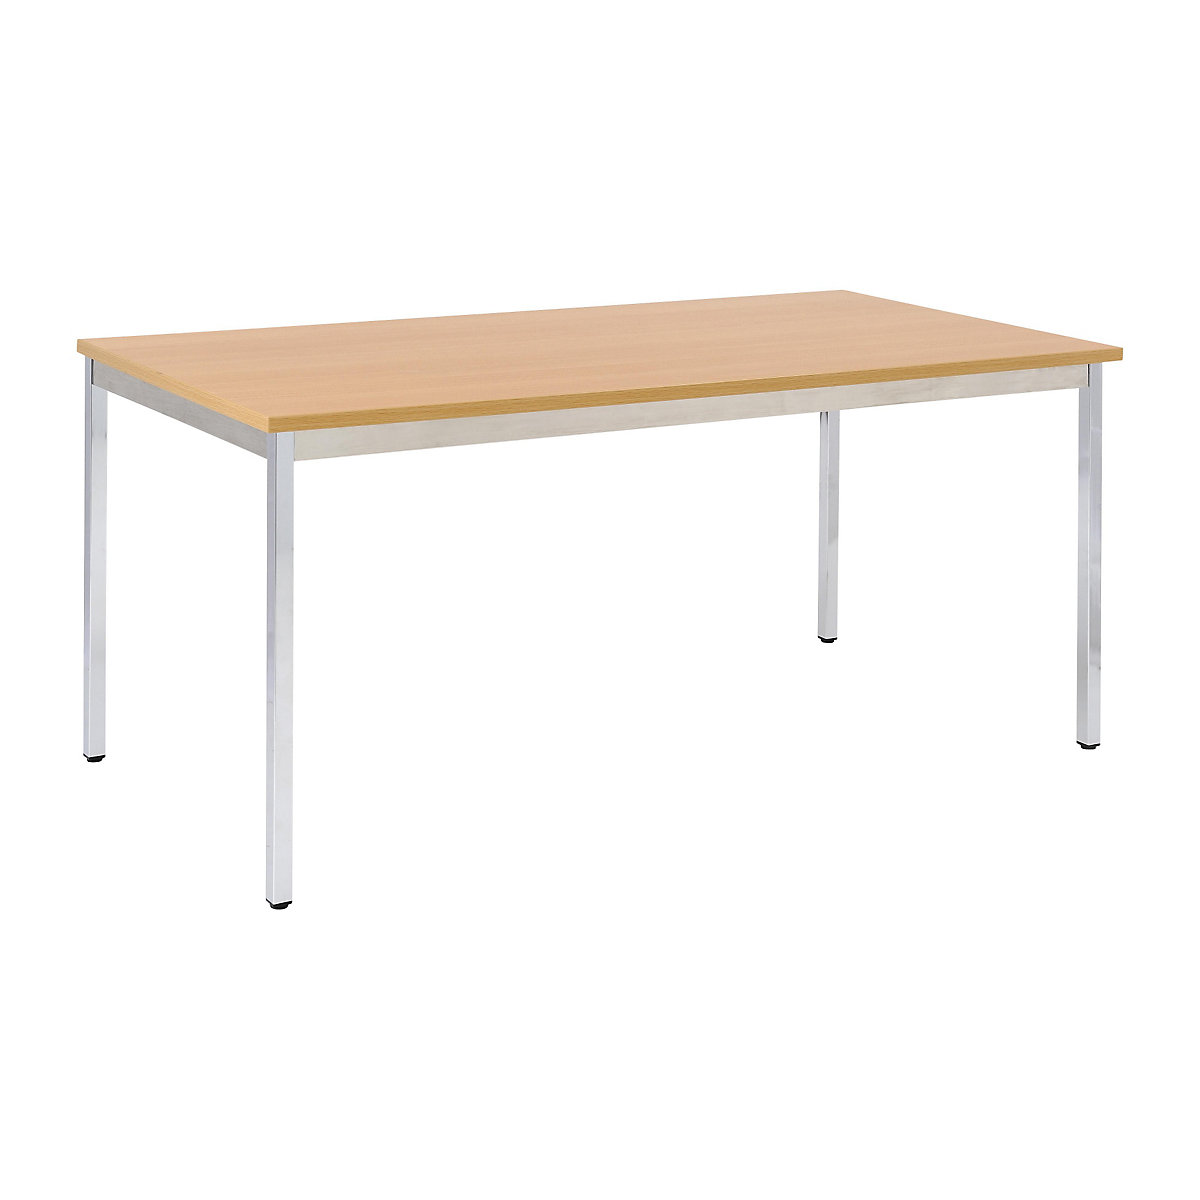 Víceúčelový stůl – eurokraft basic, obdélníkový tvar, š x v 1200 x 740 mm, hloubka 600 mm, deska v bukovém dekoru, podstavec pochromovaný-16